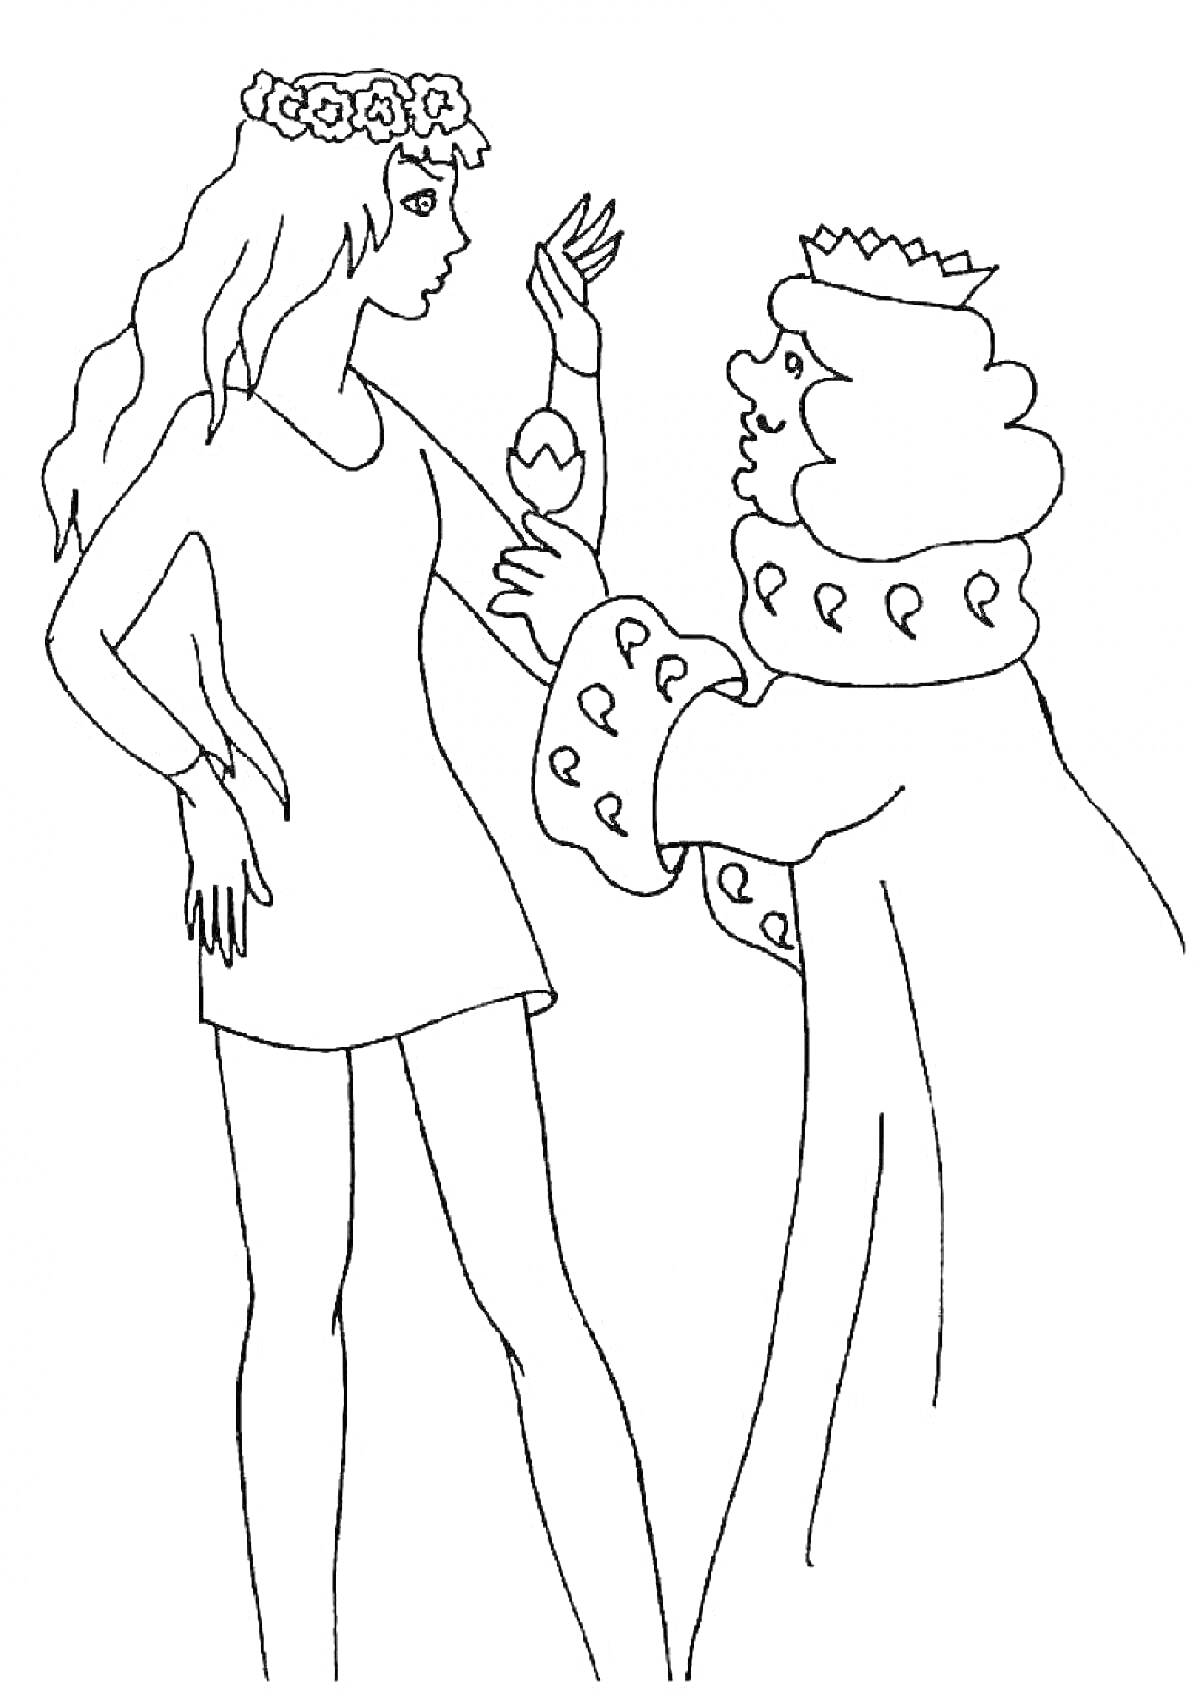 На раскраске изображено: Бременские музыканты, Принцесса, Король, Корона, Цветочный венок, Платье